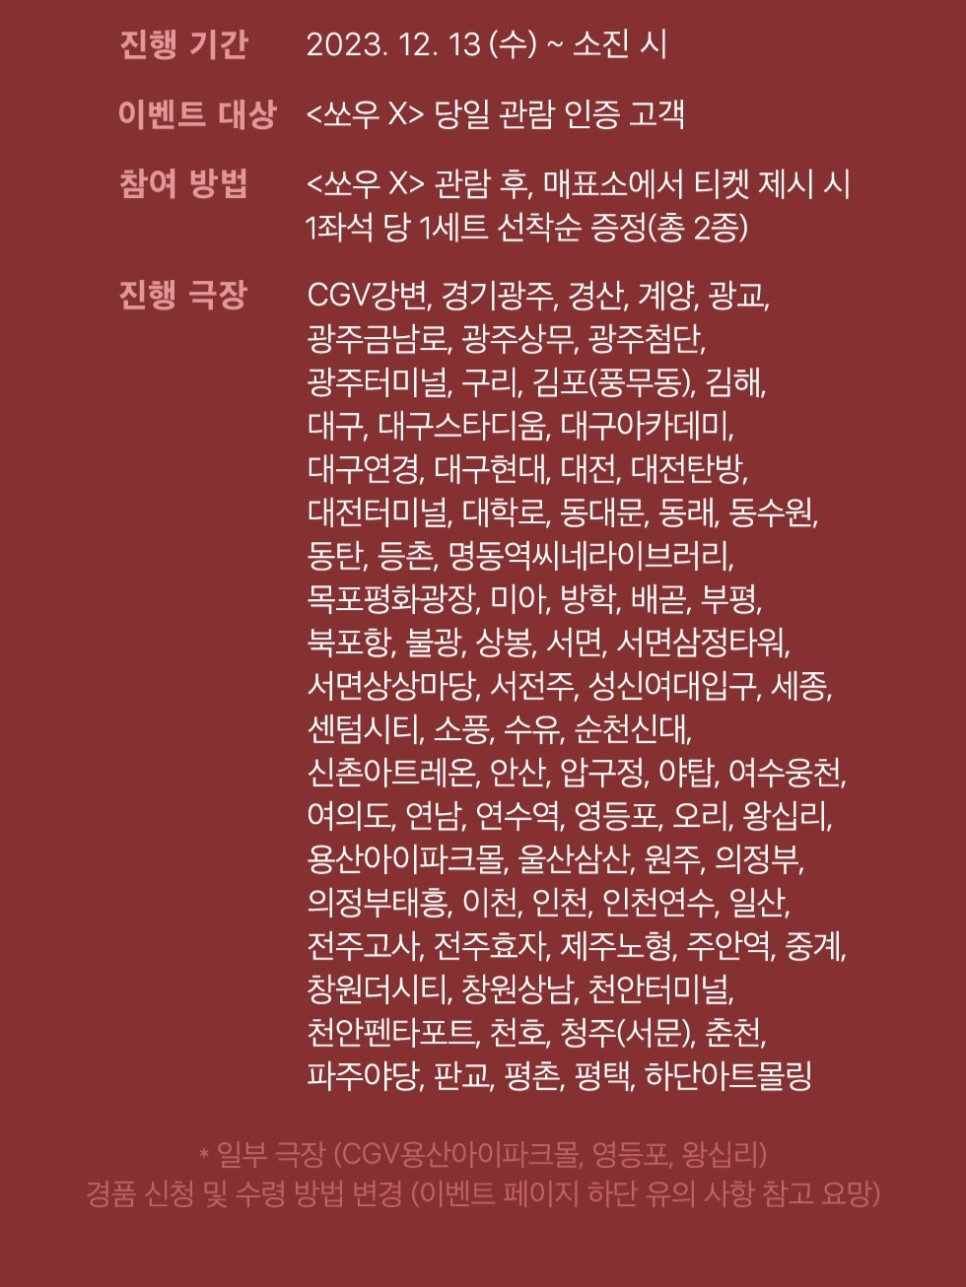 영화 쏘우 X 극장별 1주차 특전 정보 CGV 필름마크 롯데 포스터 메가박스 돌비 포스터 13일 개봉일 증정